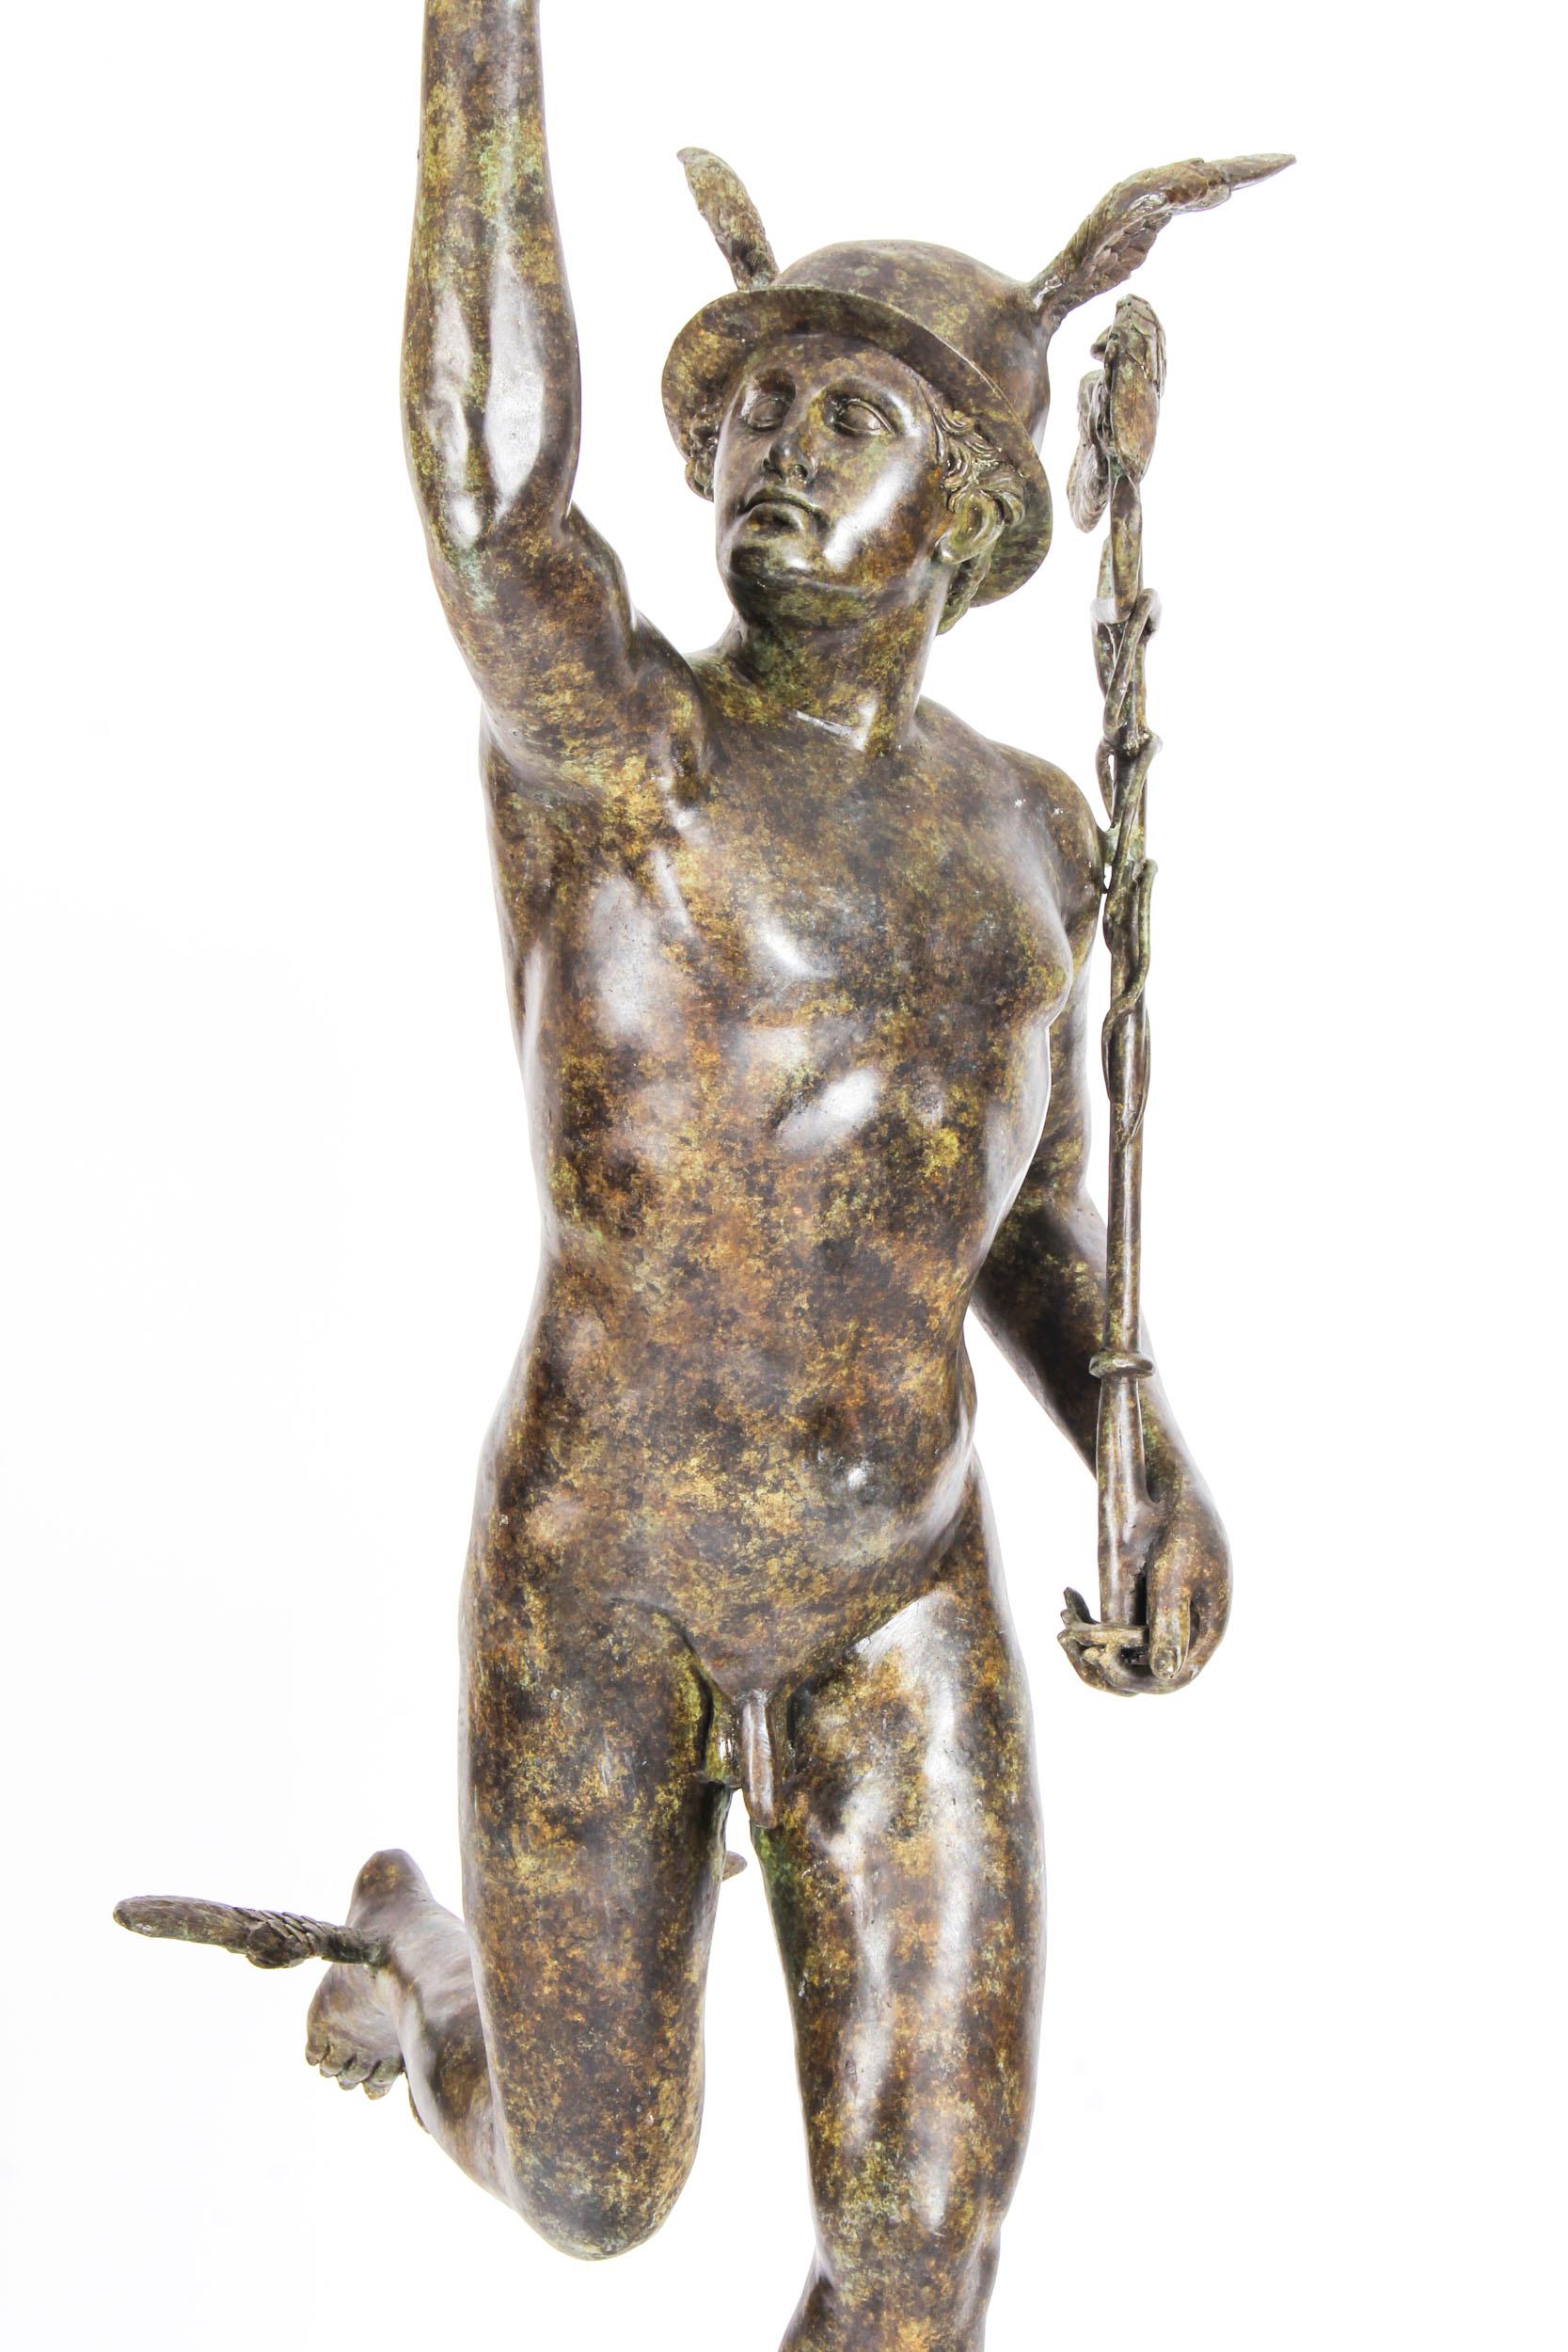 Il s'agit d'une grande sculpture en bronze magnifiquement détaillée de Mercure, également connu sous le nom d'Hermès, datant de la seconde moitié du XXe siècle.

Mercure est magnifiquement représenté avec une patine vert-de-gris saisissante, debout